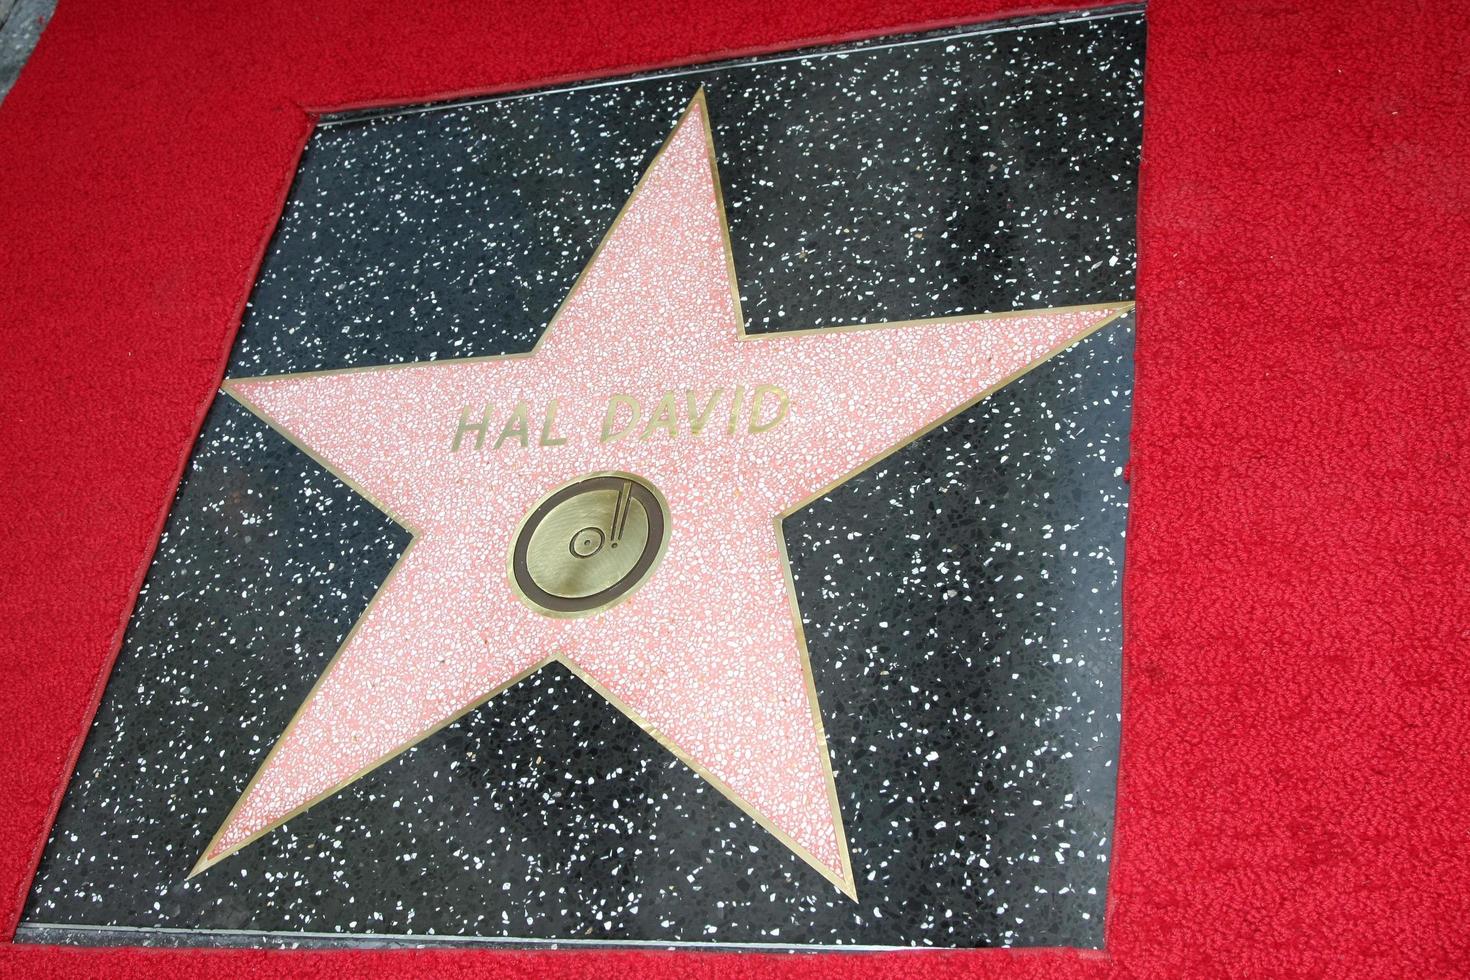 los angeles, 14 ottobre - hal david wof star alla cerimonia per conferire una stella sulla Hollywood Walk of fame per hal david all'istituto dei musicisti il 14 ottobre 2011 a los angeles, ca foto